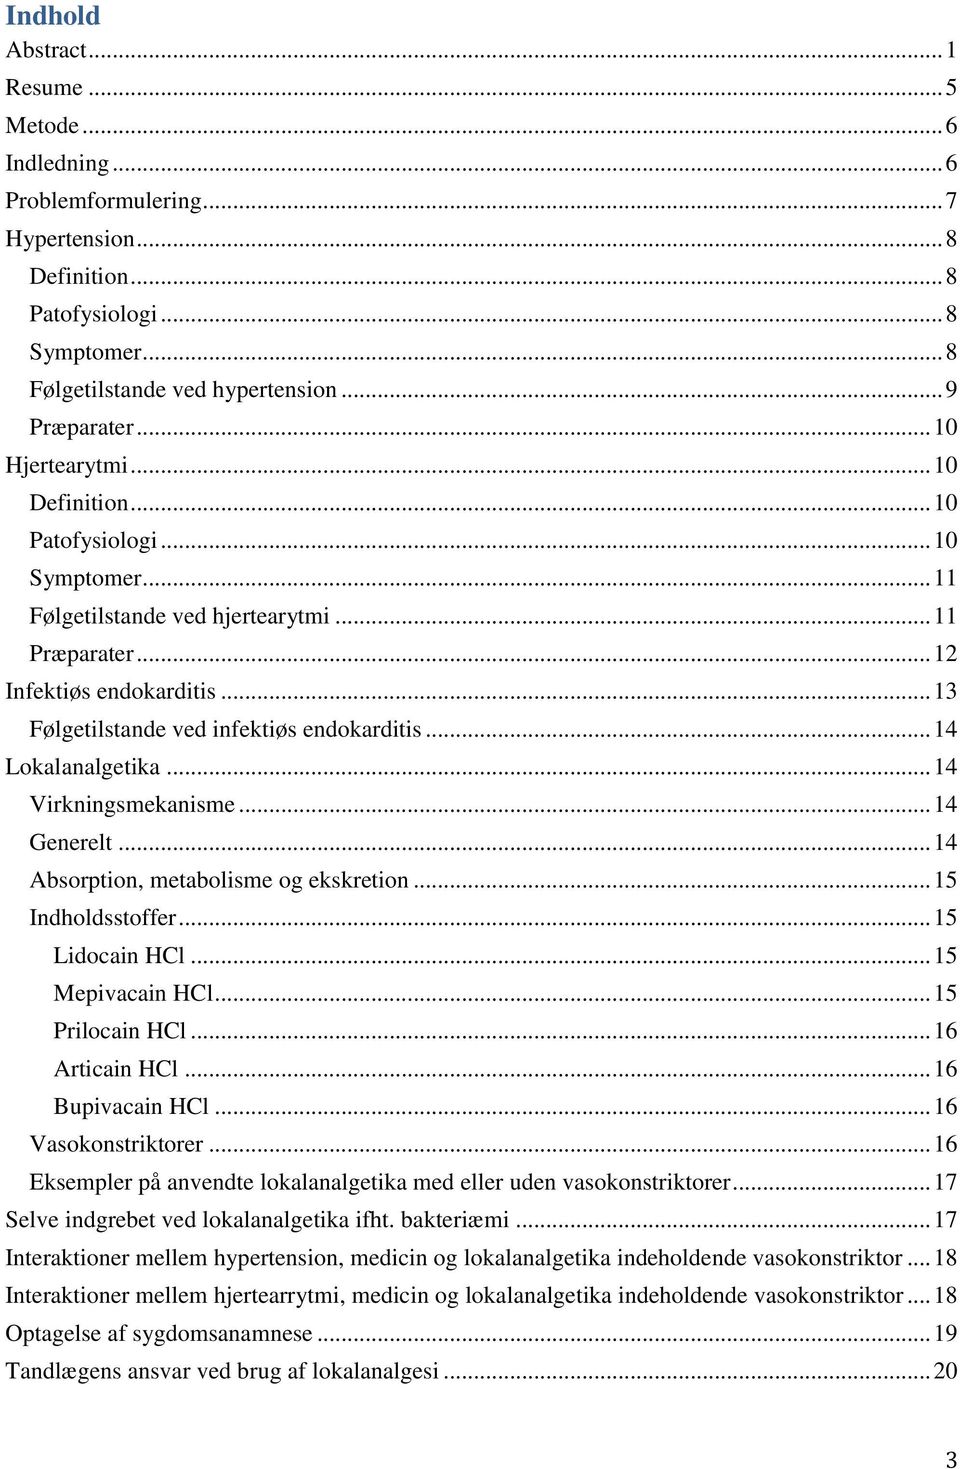 .. 13 Følgetilstande ved infektiøs endokarditis... 14 Lokalanalgetika... 14 Virkningsmekanisme... 14 Generelt... 14 Absorption, metabolisme og ekskretion... 15 Indholdsstoffer... 15 Lidocain HCl.